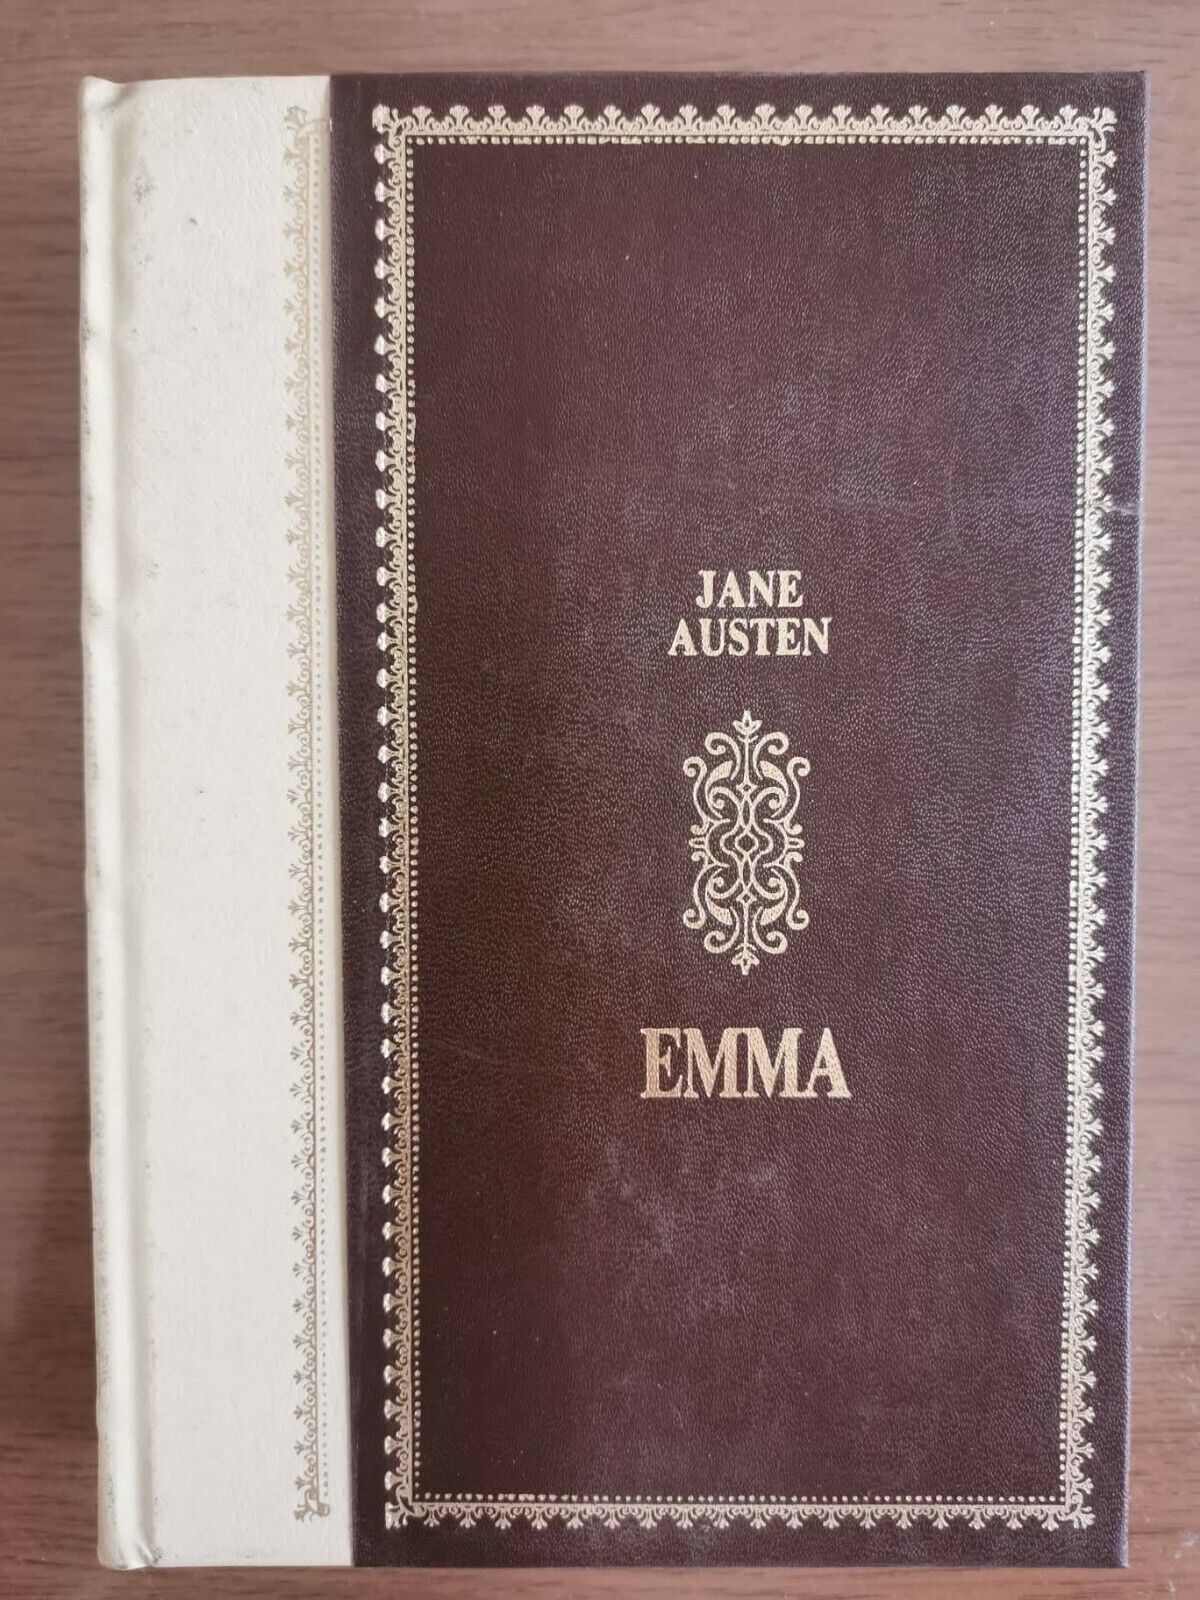 Emma - J. Austen - Peruzzo editore - 1986 - AR